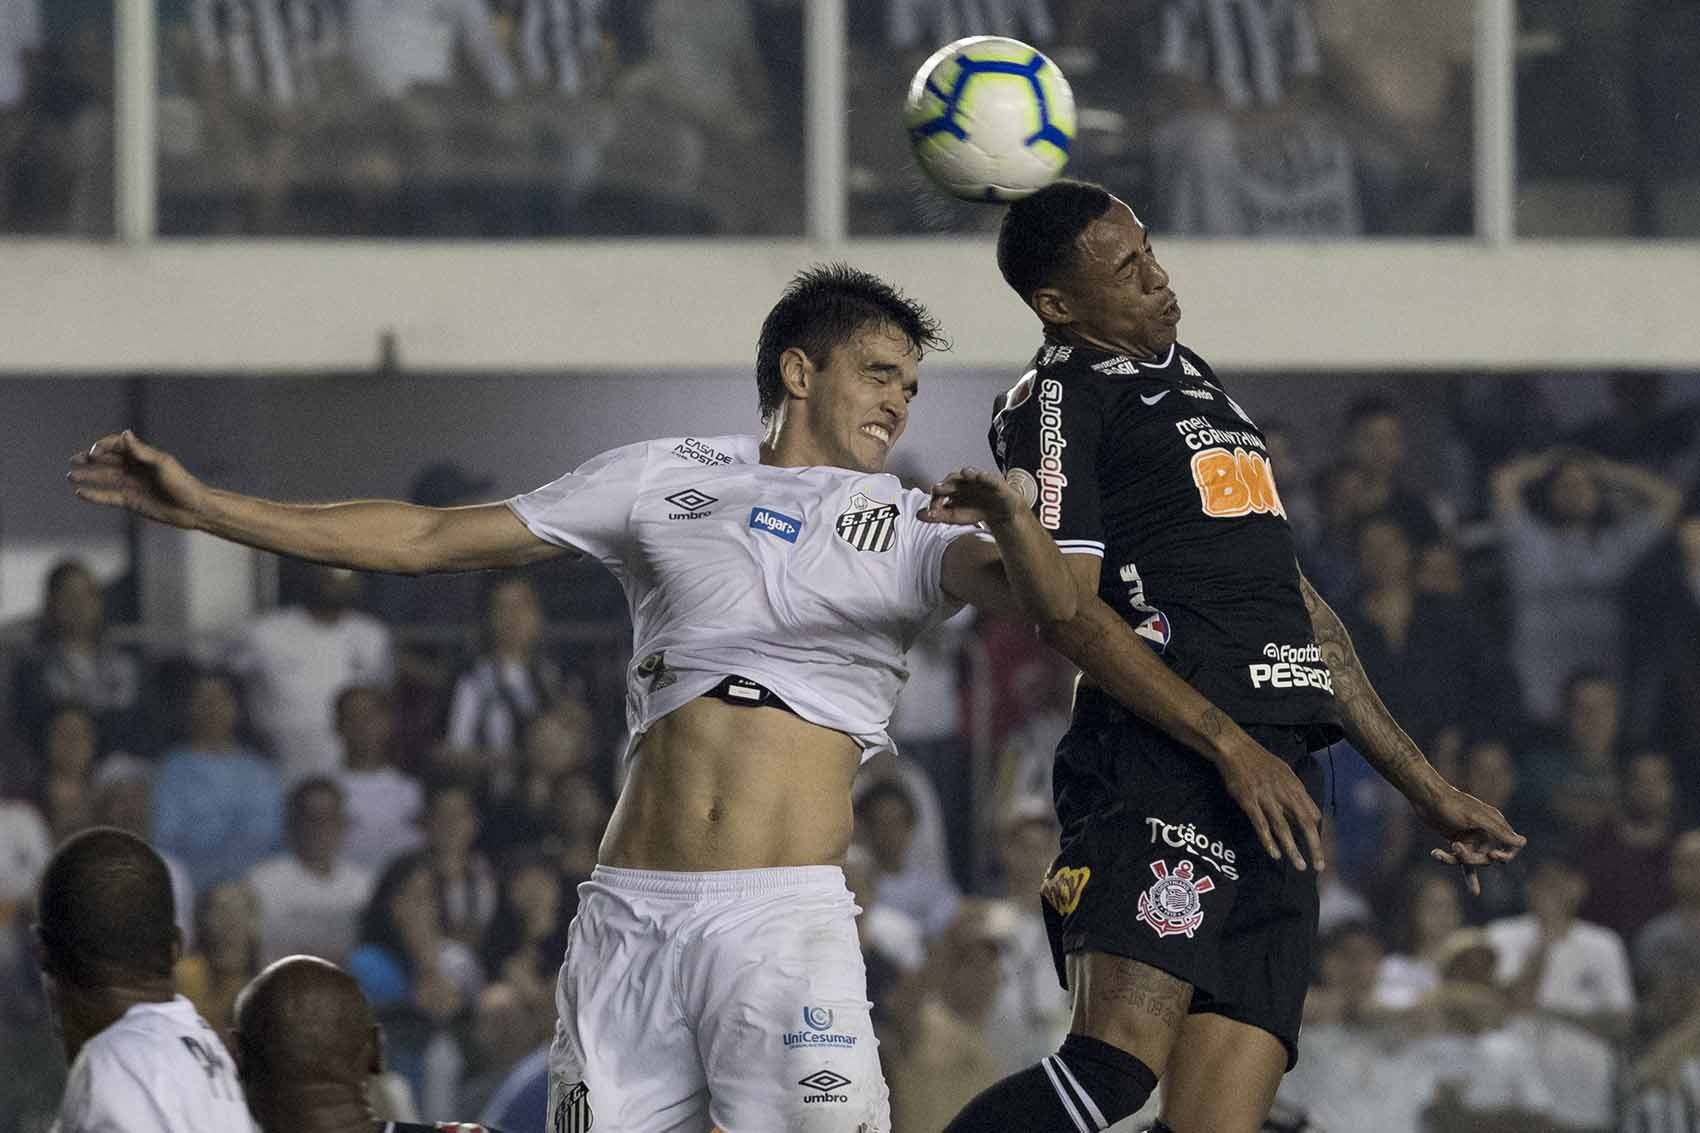 Corinthians vence menos do que soma de empates e derrotas há seis